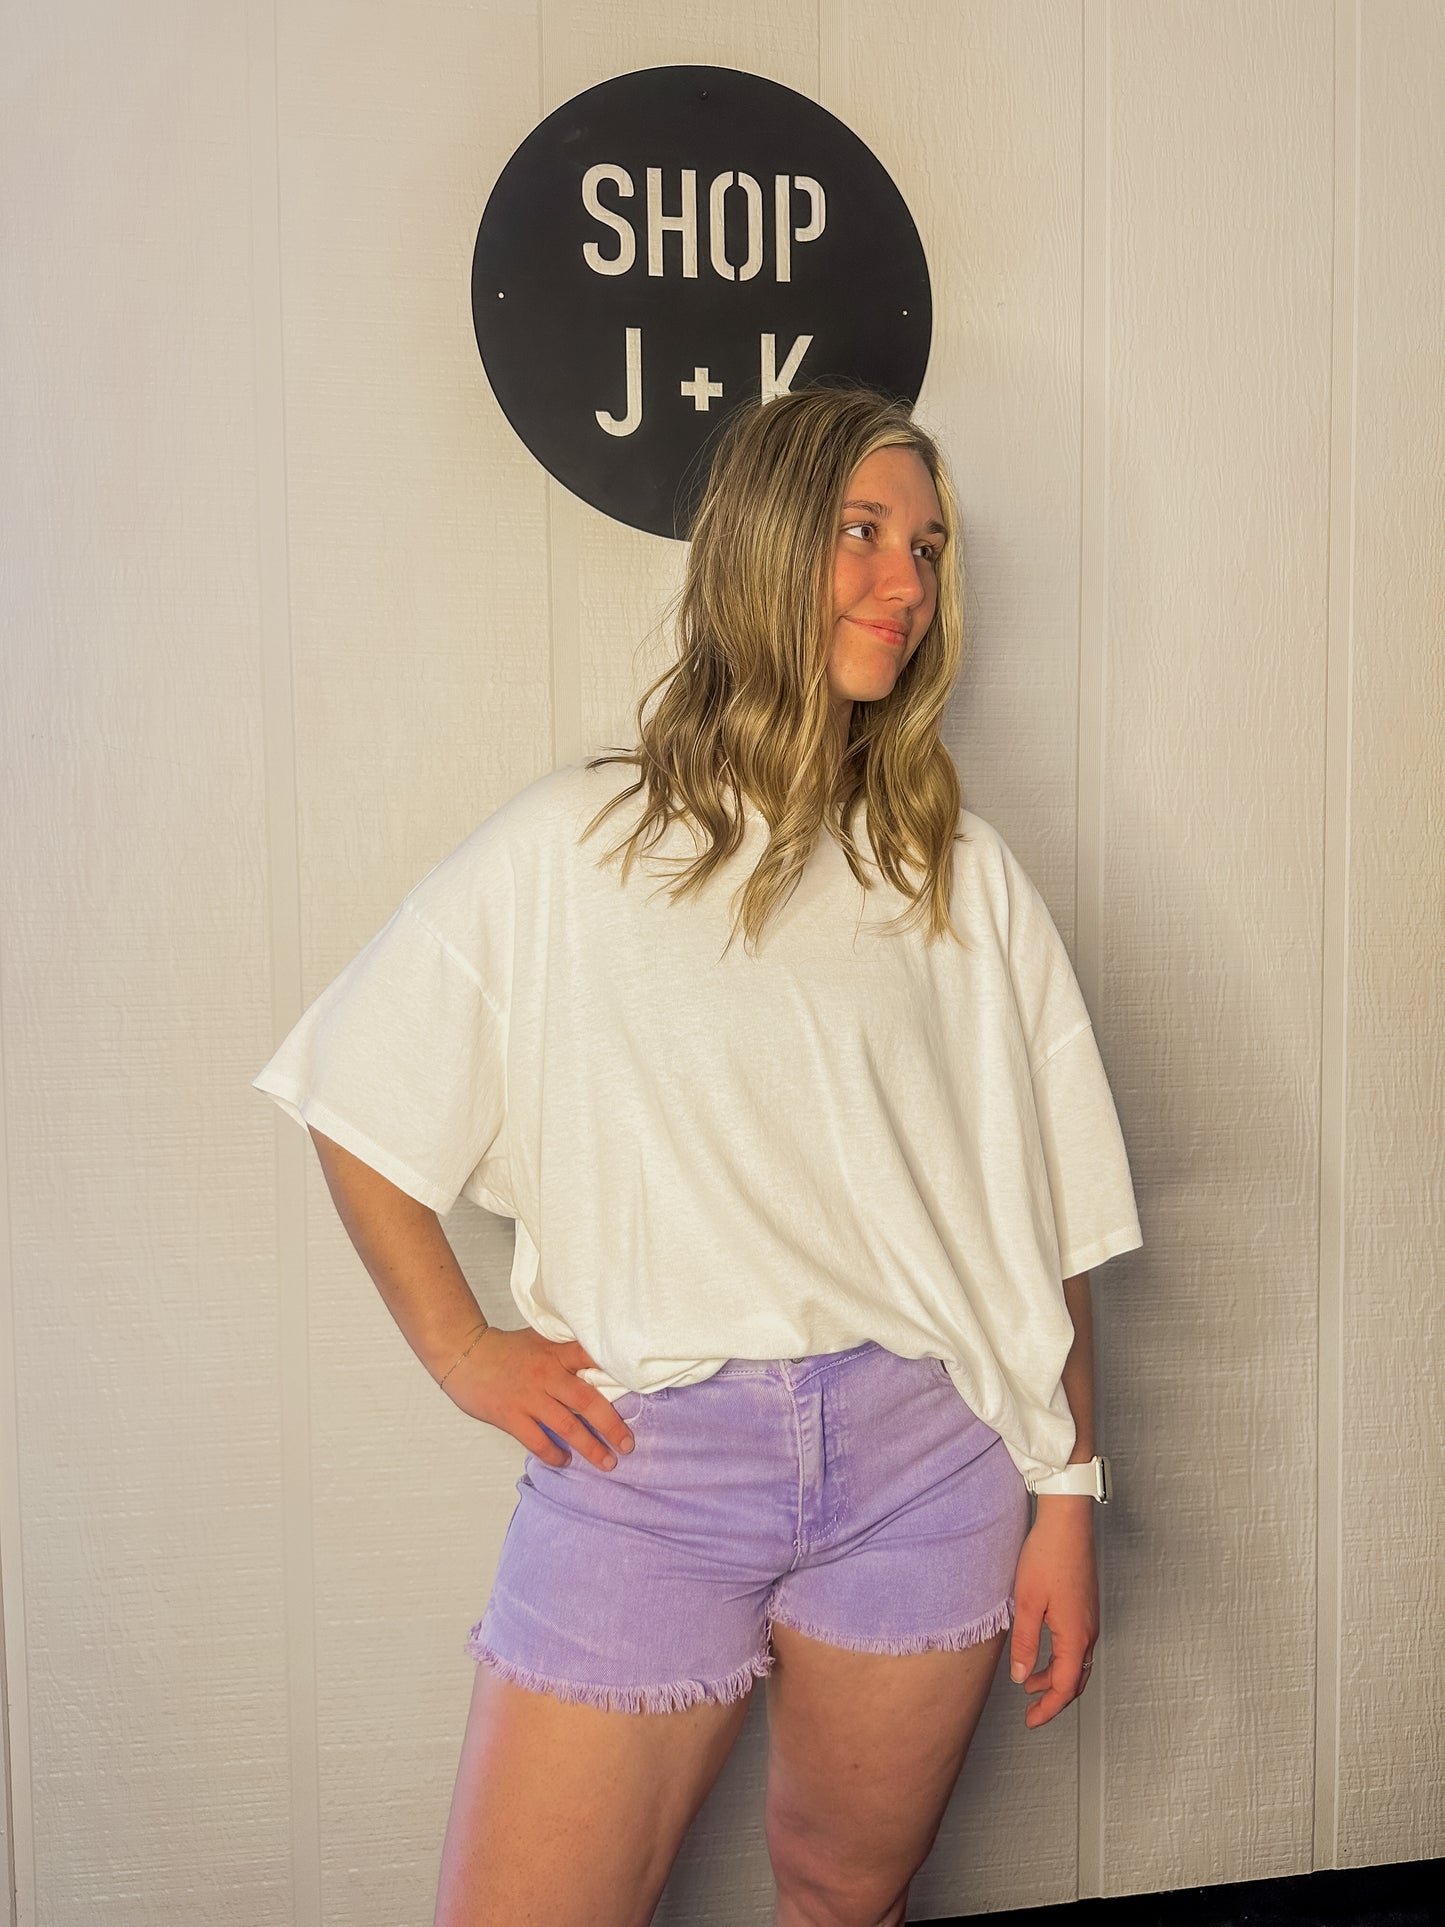 Purple Denim Shorts